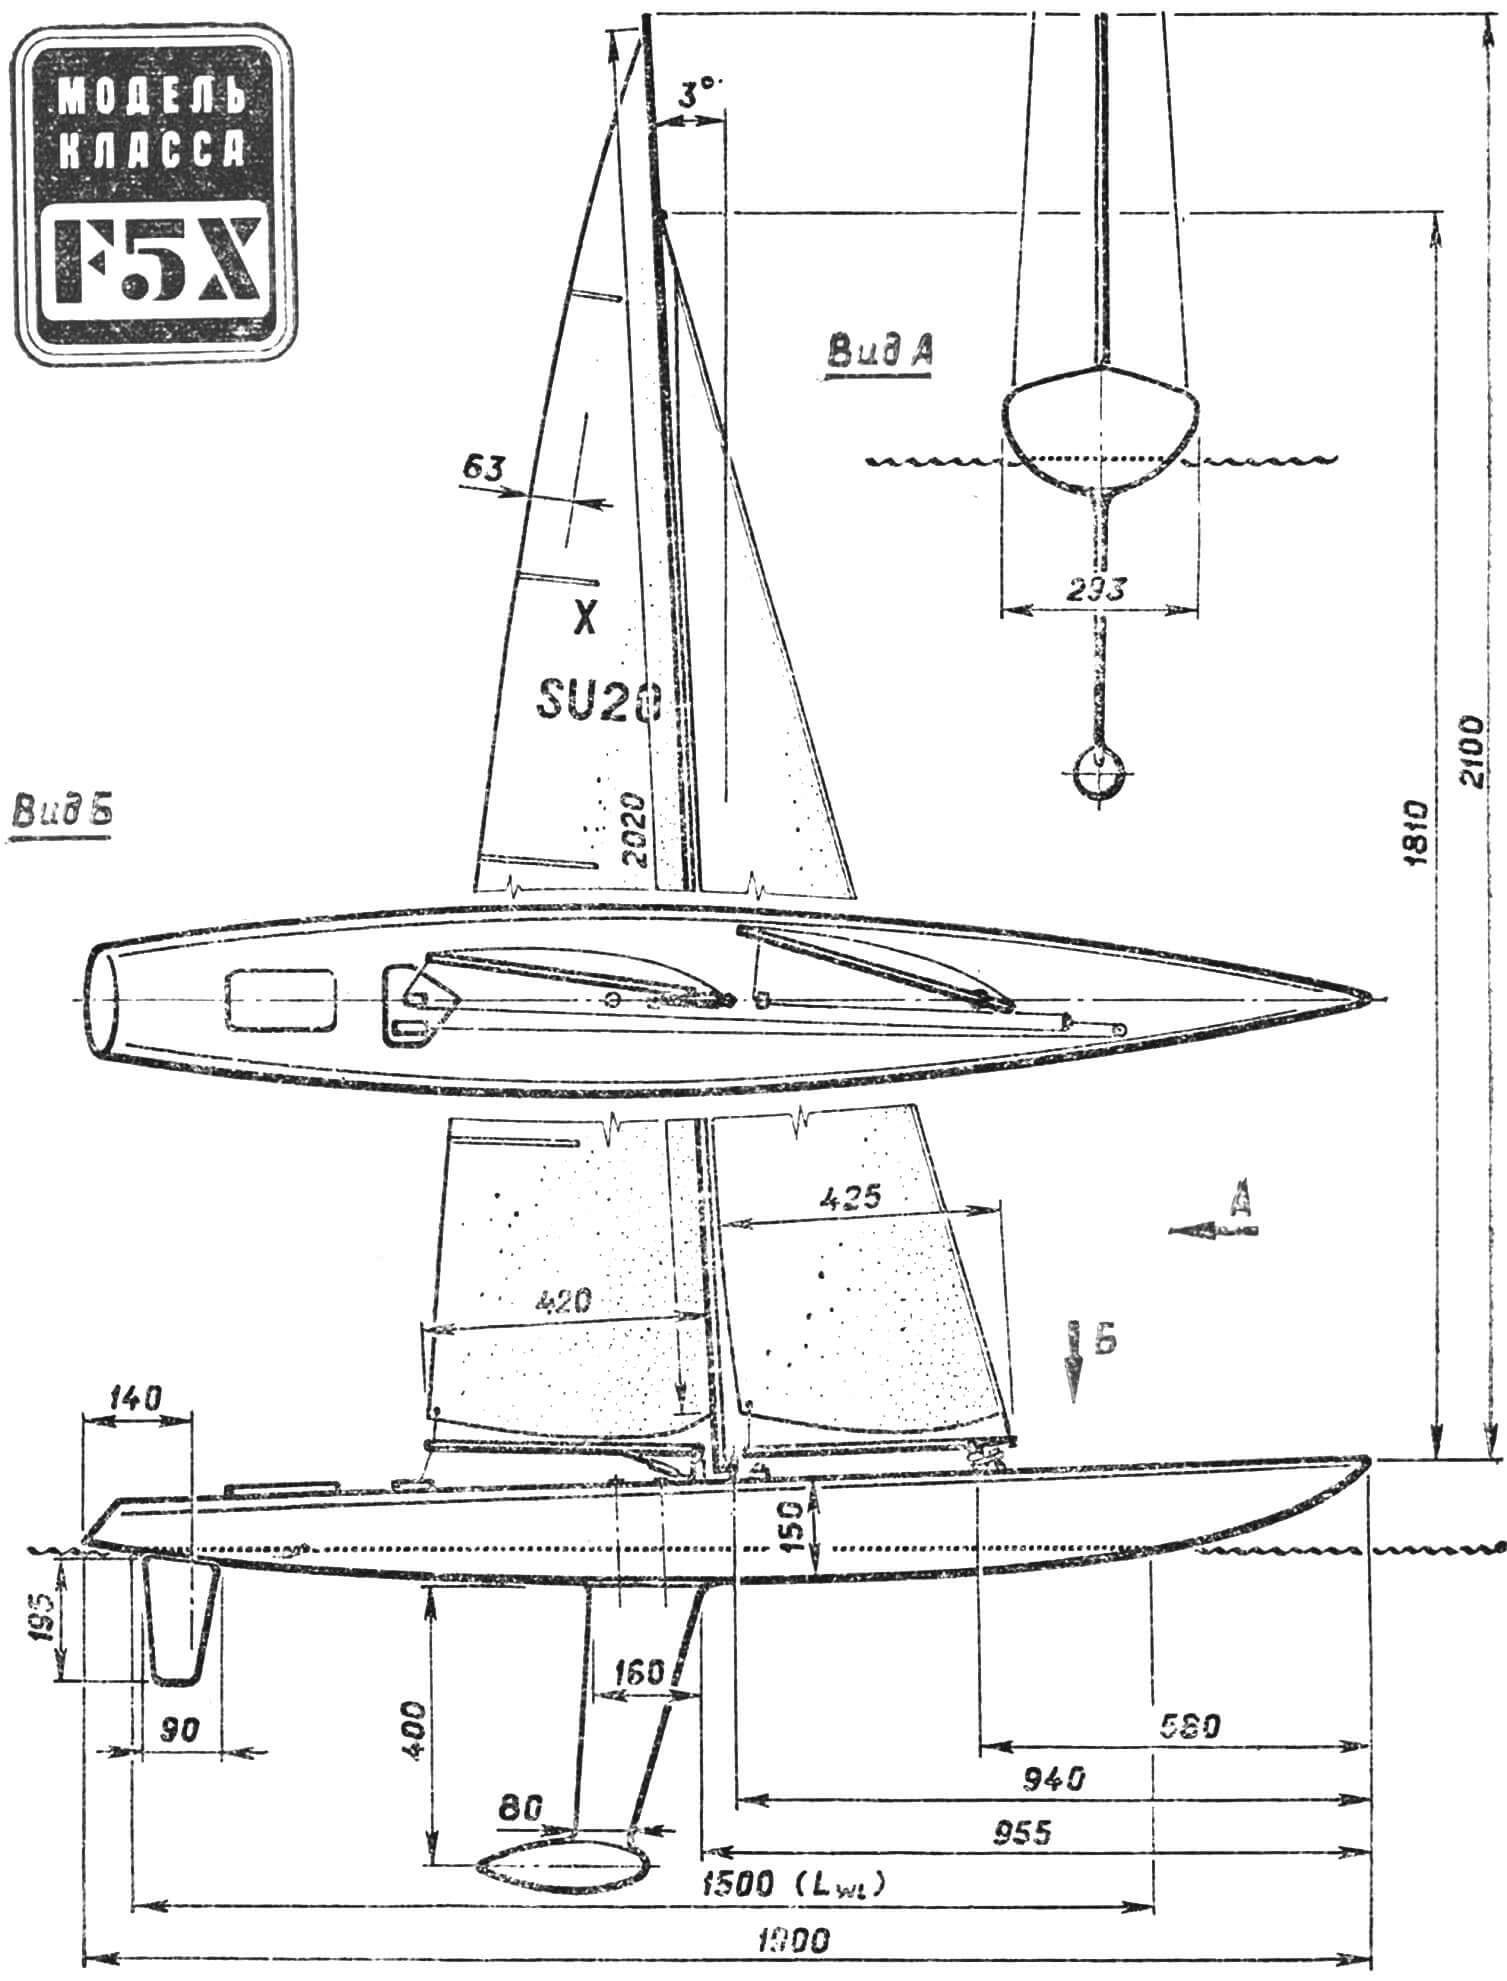 Радиоуправляемая модель яхты класса F5X чемпиона СССР 1985 г. К. Головина.